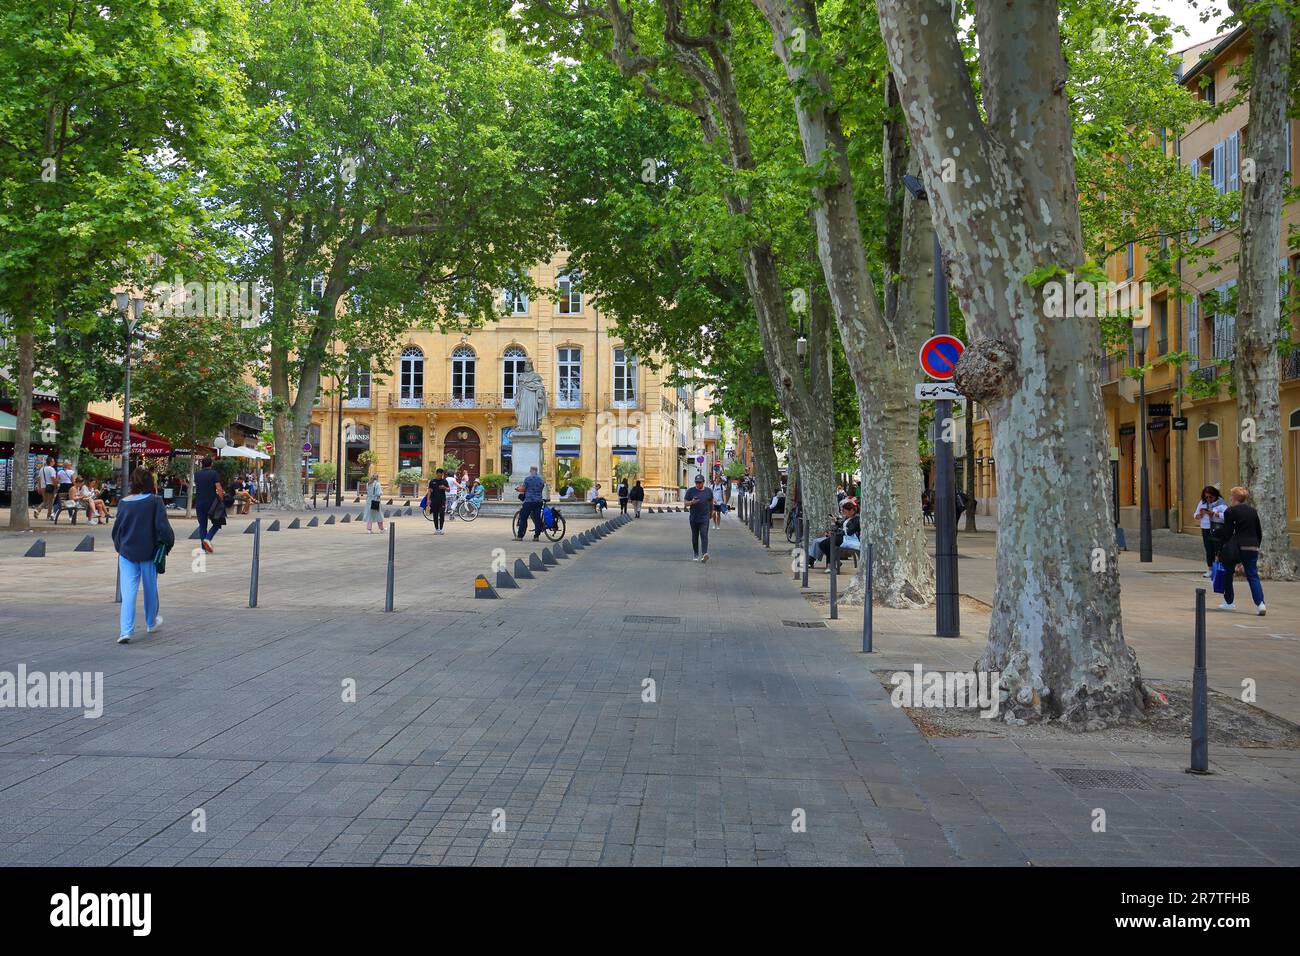 Célèbre cours Mirabeau Boulevard avec avenue et pour flâner, piéton, rue, Aix-en-Provence, Bouches-du-Rhône, Provence, France Banque D'Images